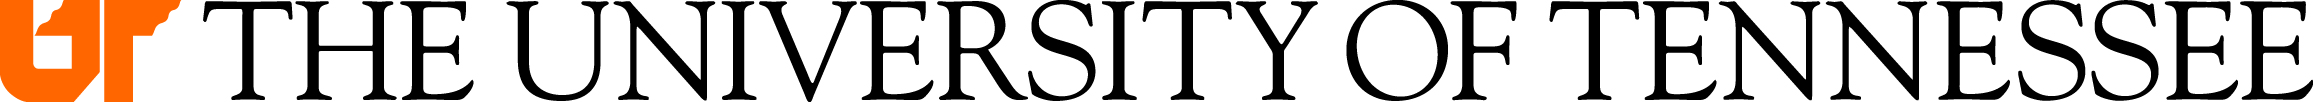 UT-System-logo-primary-horizontal.jpg